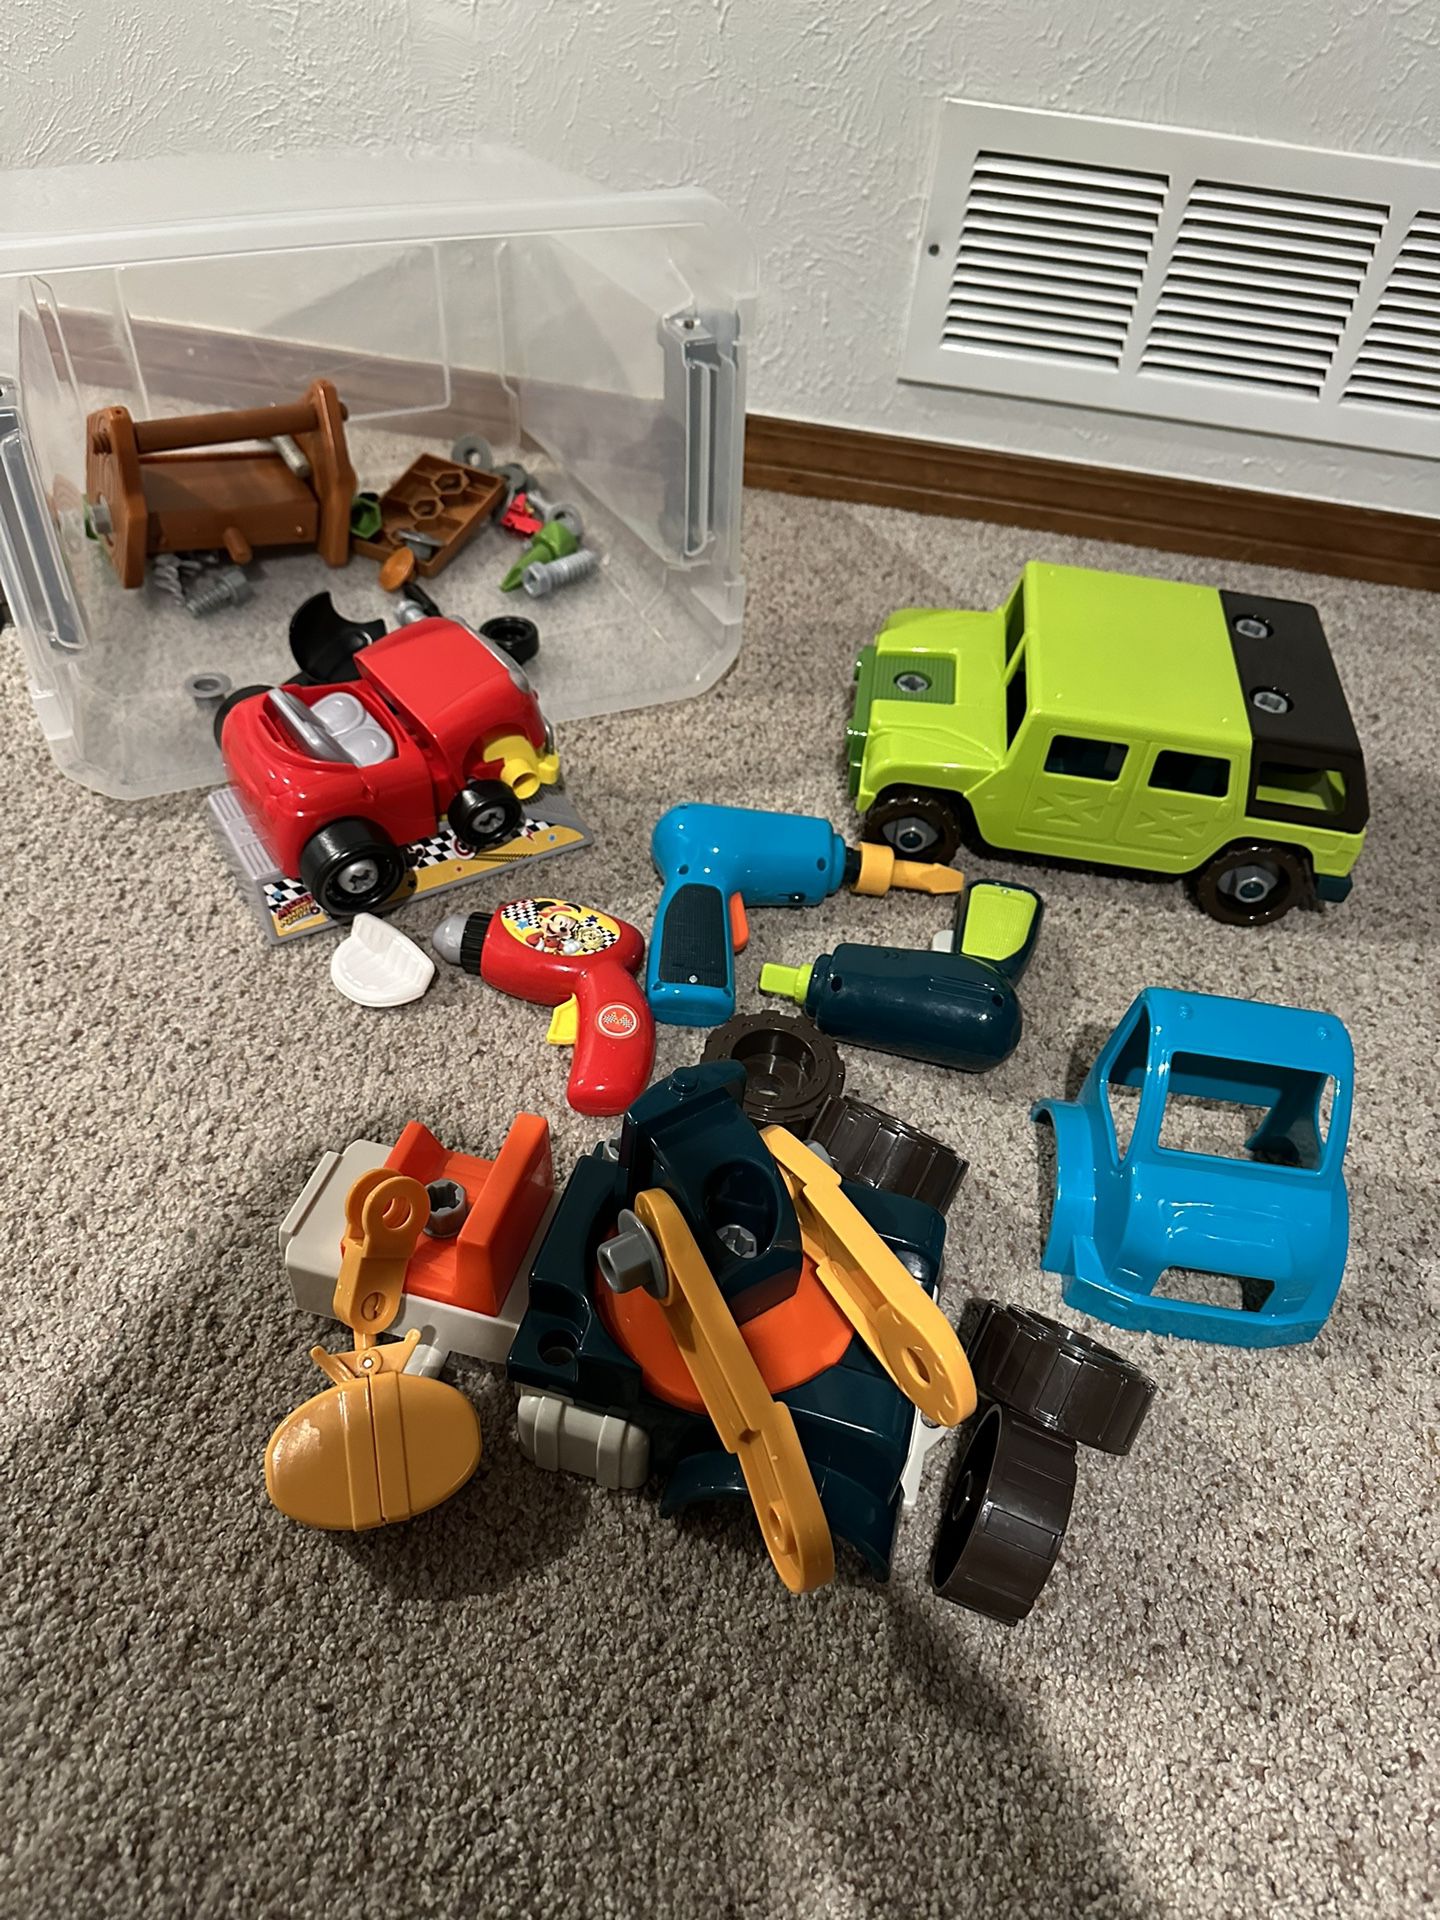 Battat- Wonder Wheels– Toy Crane/Car With Drill 